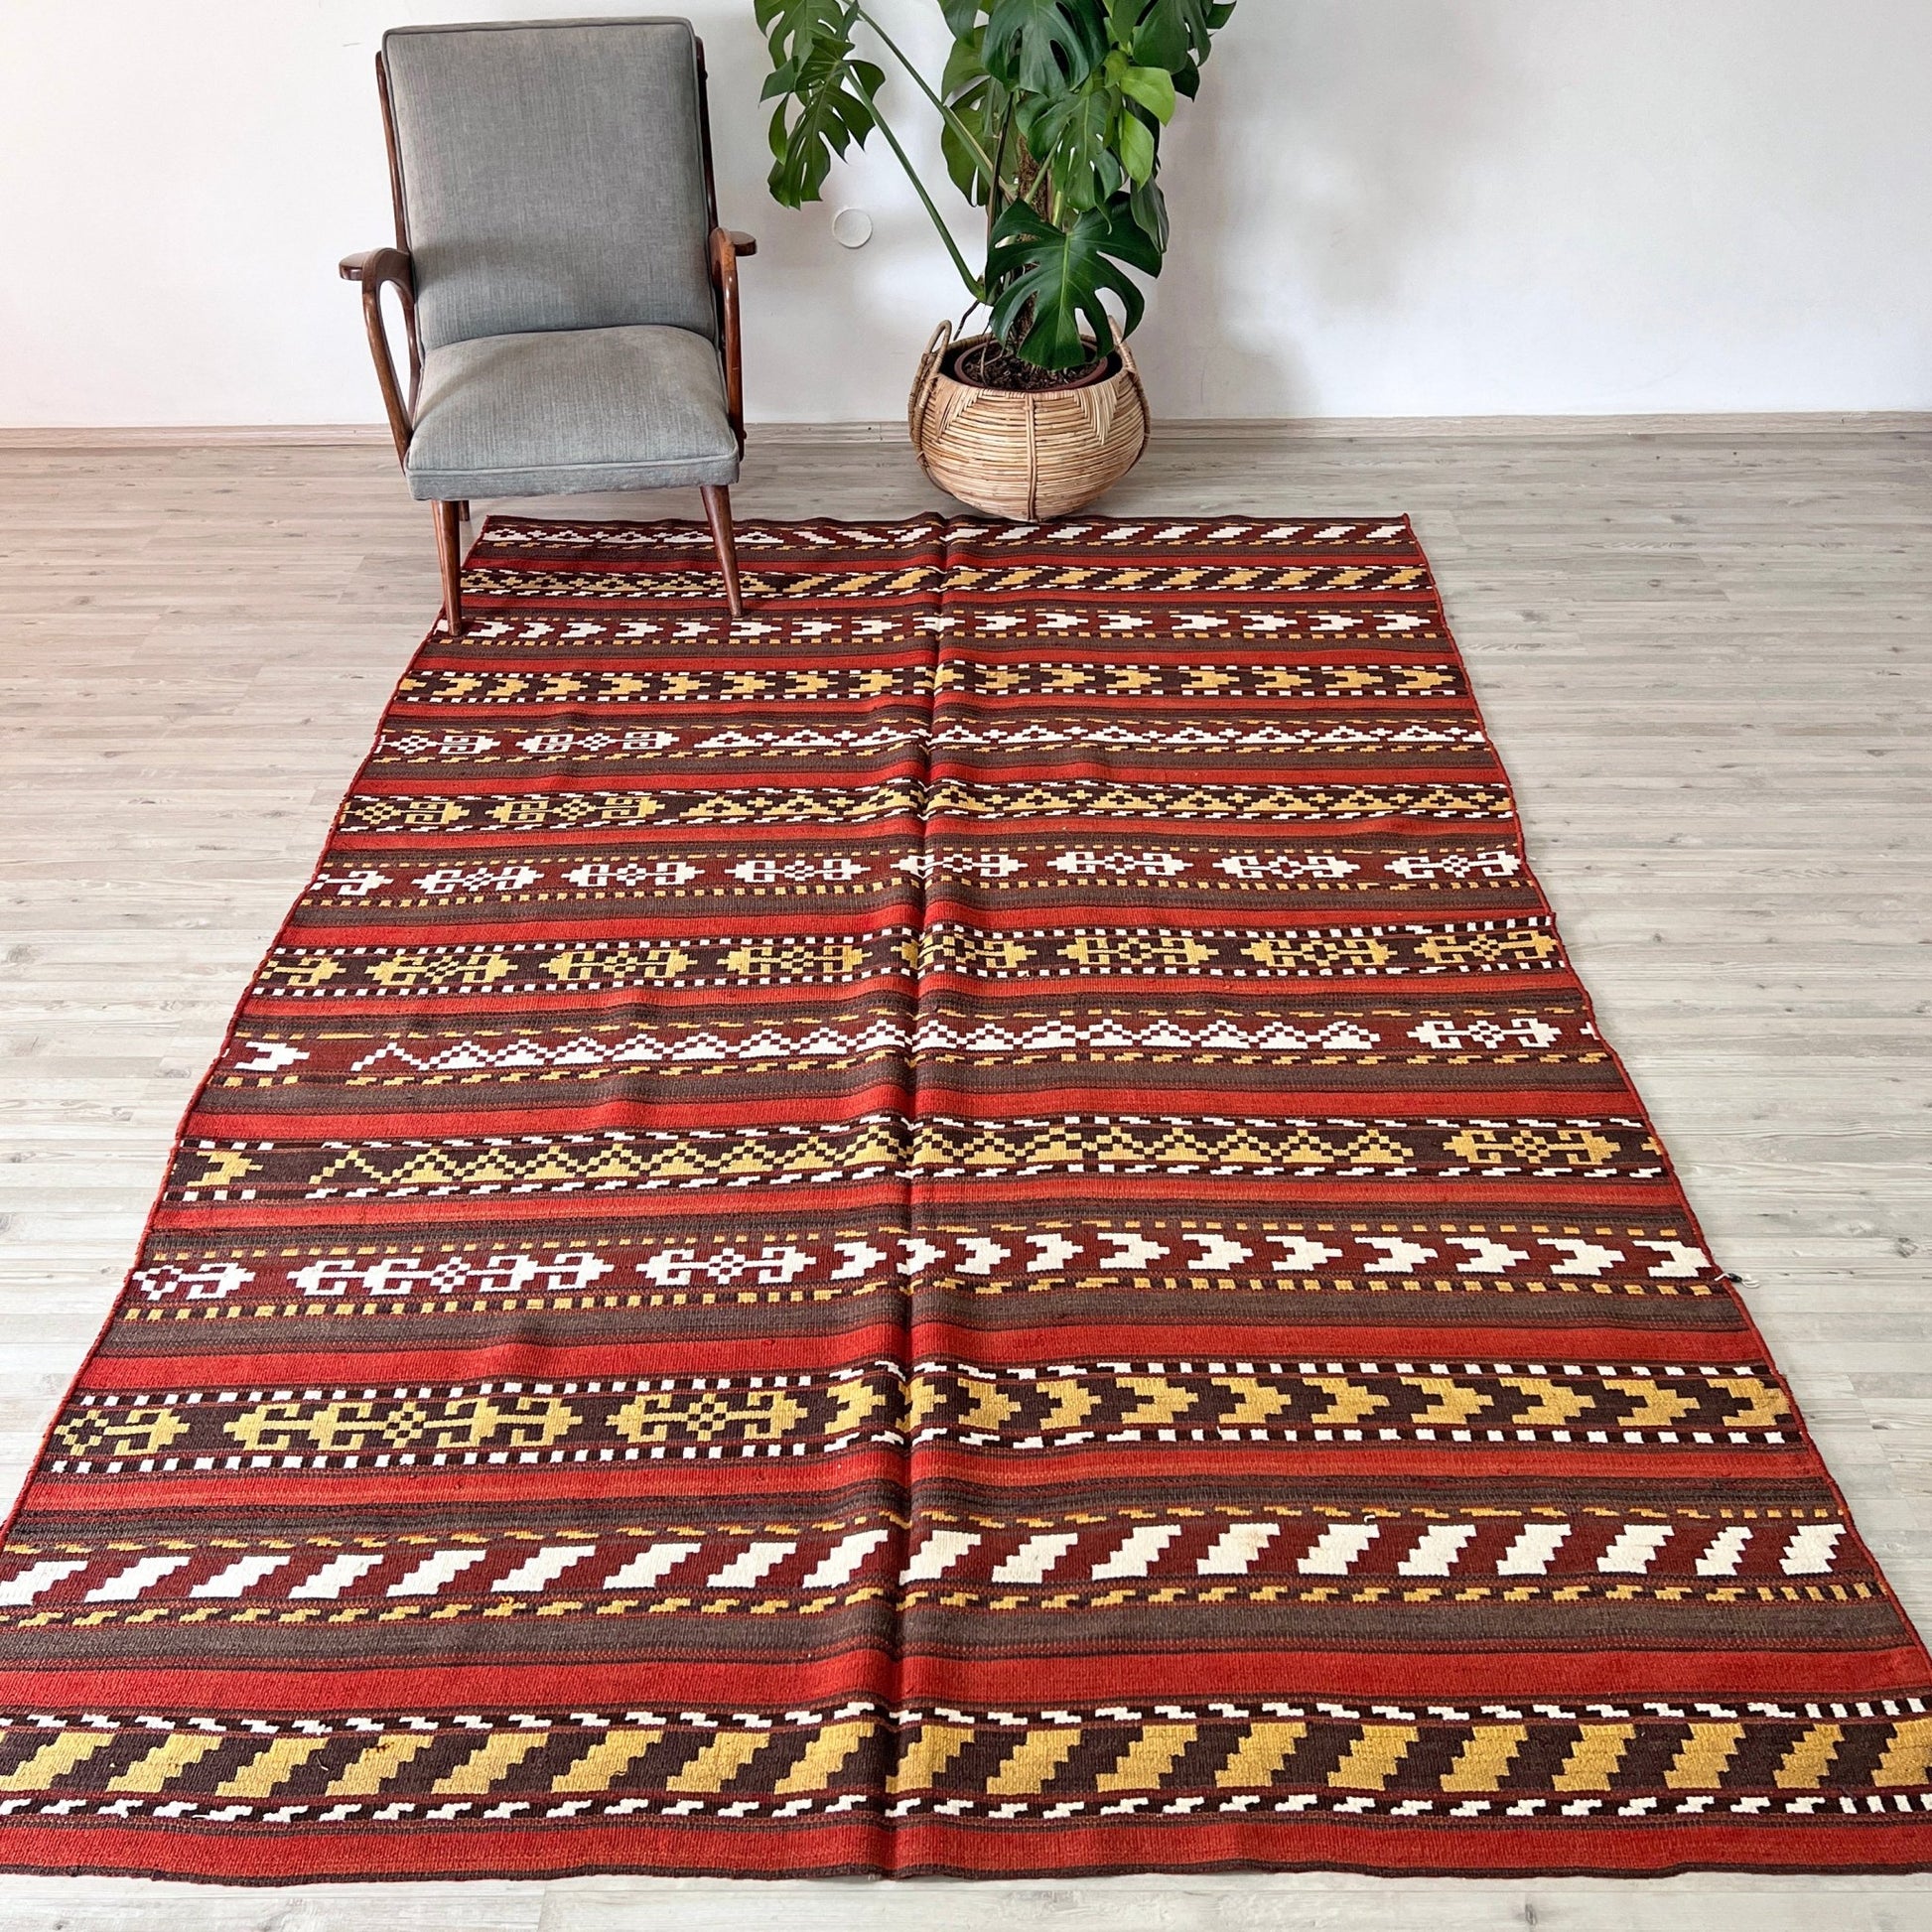 uzbek rug shop san francisco bay area oriental rug palo alro rug shop berkeley buy rug online california toronto canada